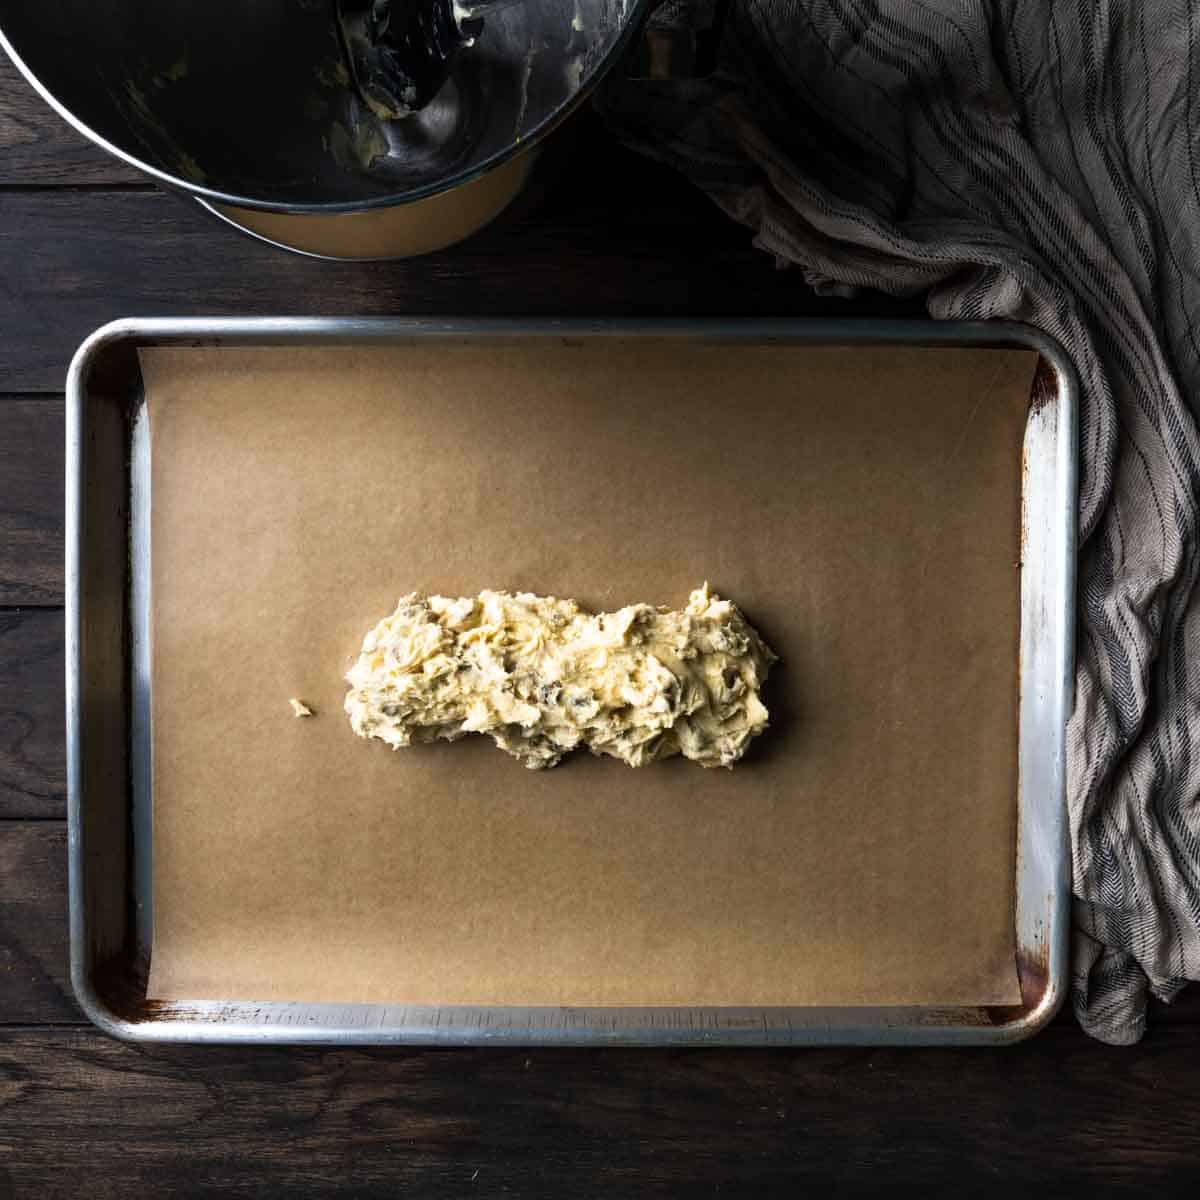 An irregular log of pistachio biscotti dough on a baking sheet